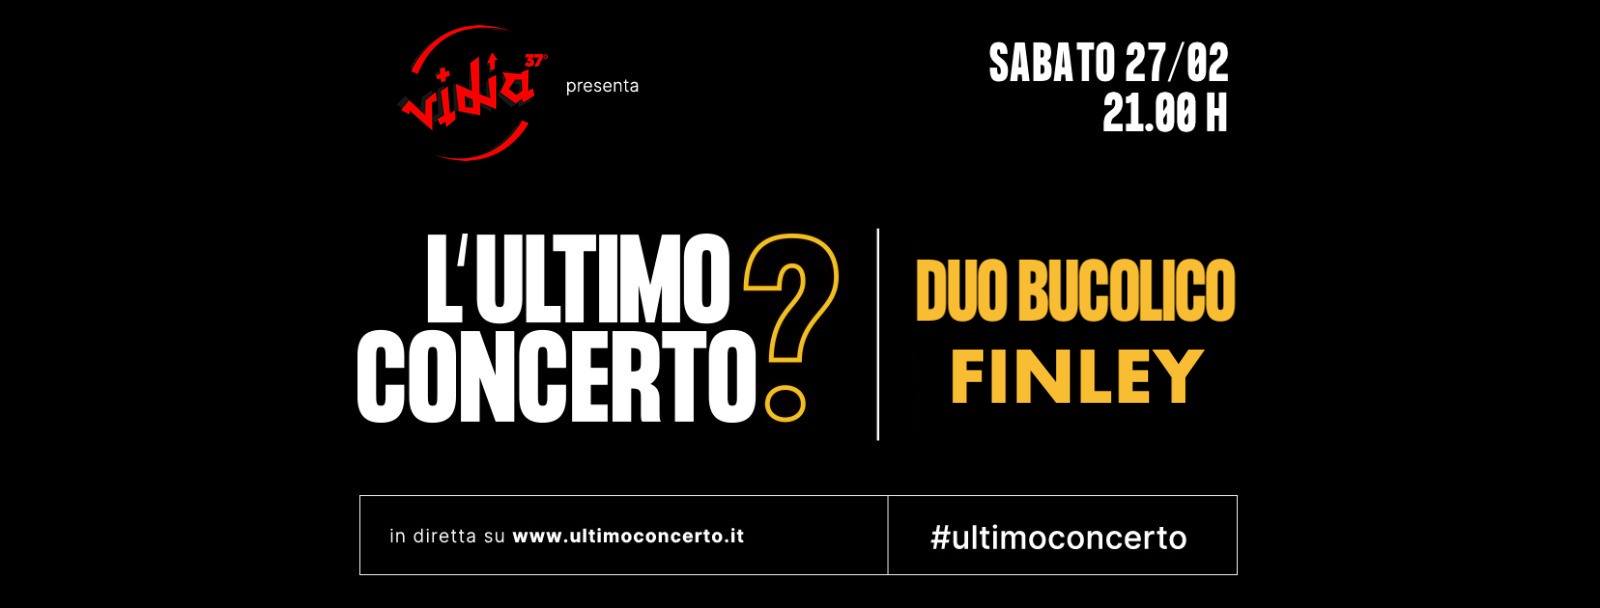 Duo Bucolico + Finley, L'Ultimo Concerto? Vidia Cesena